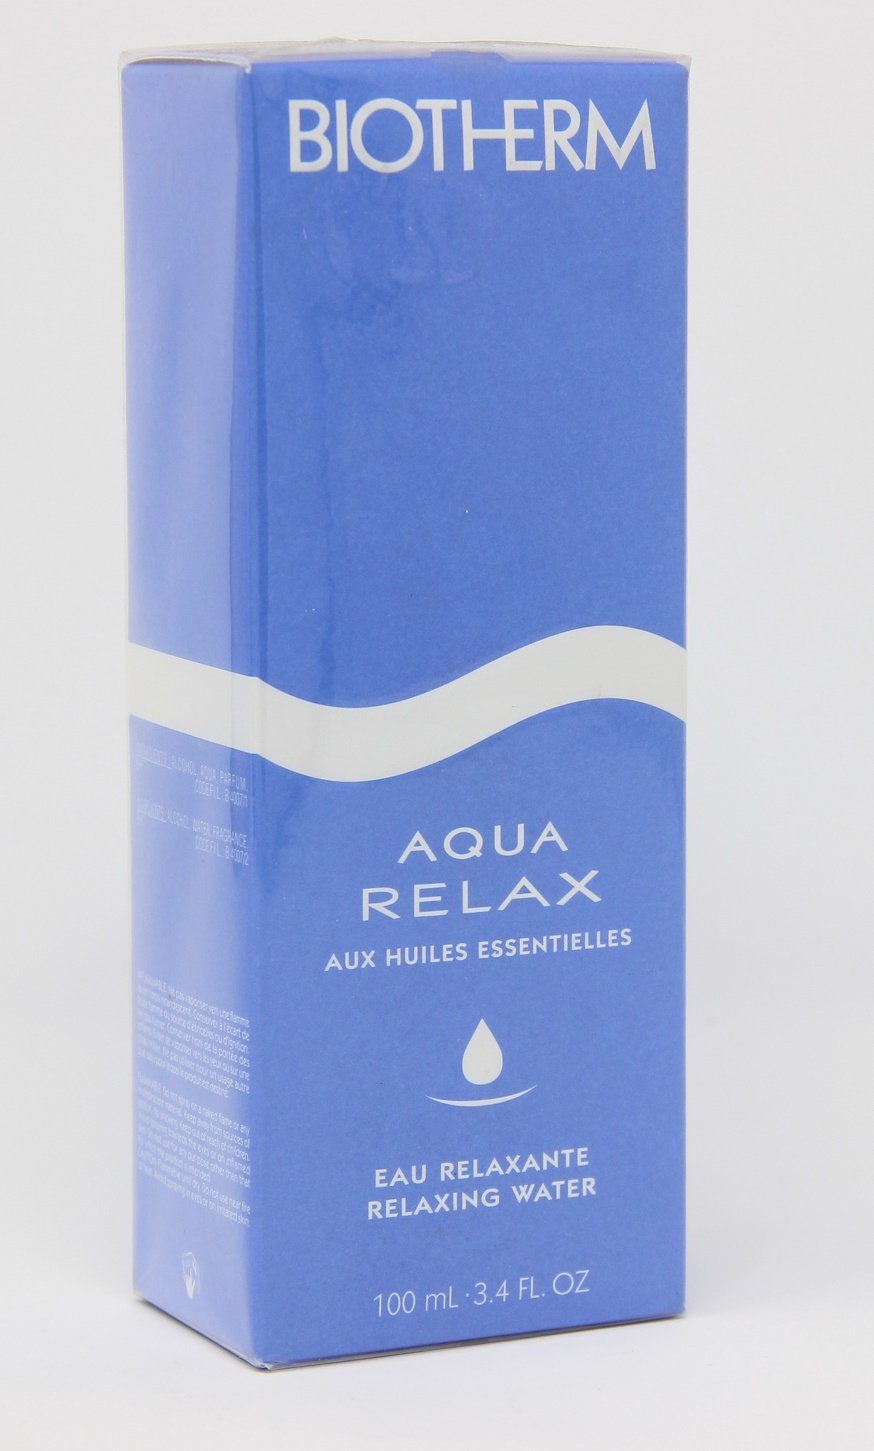 BIOTHERM Selbstbräunungstücher Biotherm Aqua Relax essential oils relaxing water 100ml | Selbstbräunungs-Tücher